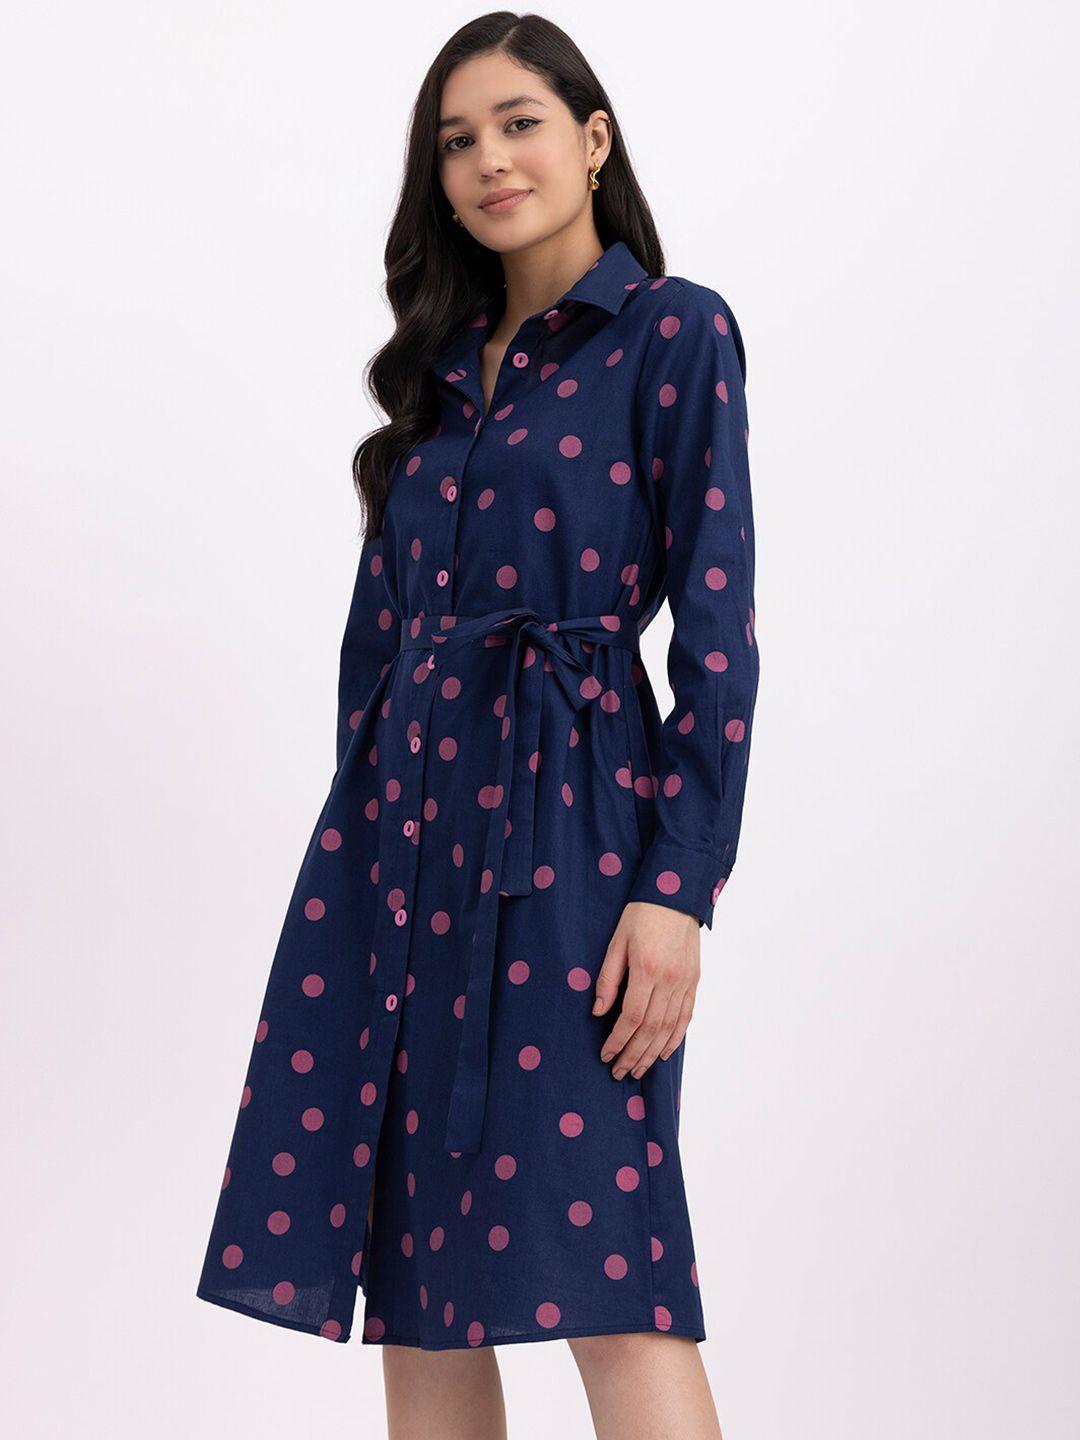 fablestreet polka dots printed linen shirt dress with belt